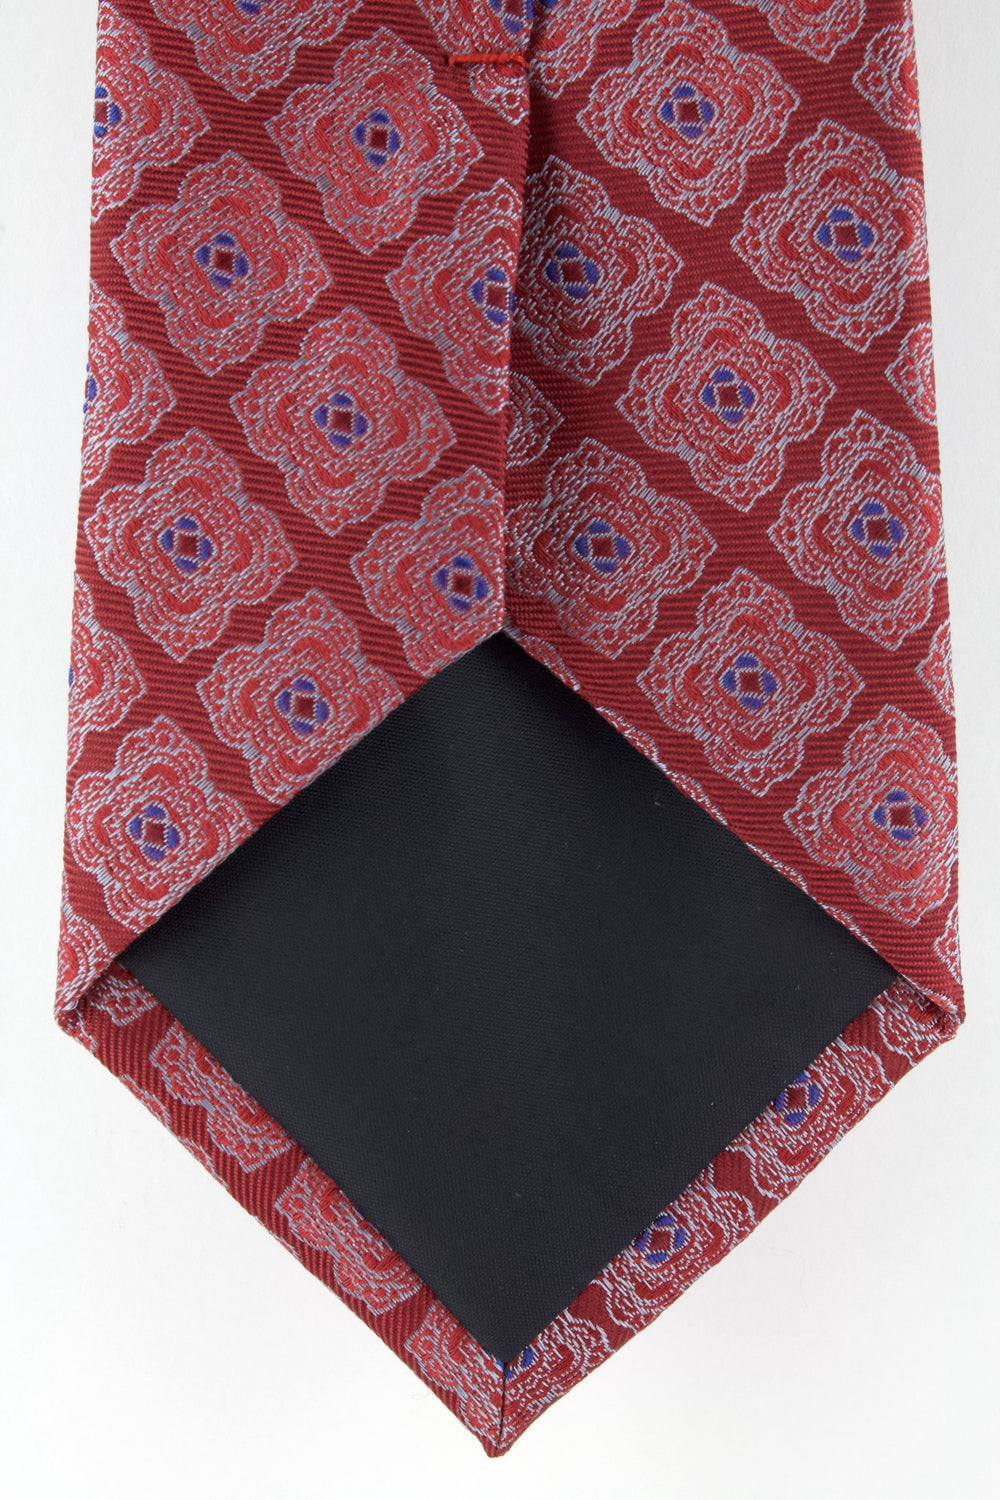 Cravate en soie tissée rouge motif fleur